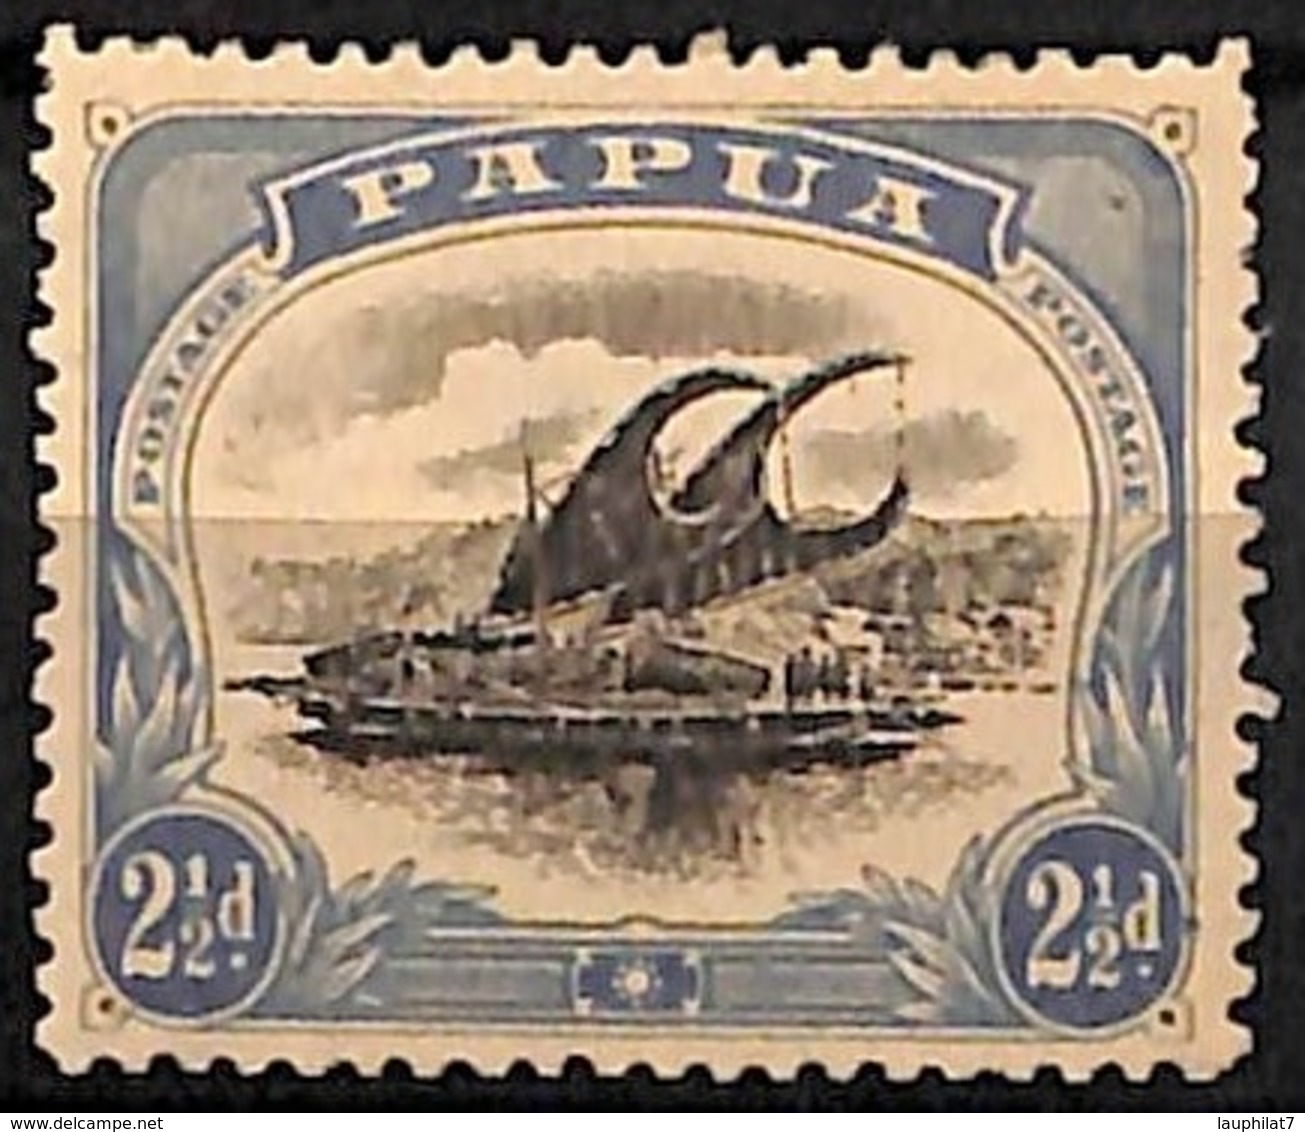 [829593]Papouasie 1908 - N° 36B, 2p1/2 Outremer, Perf 12 1/2, Fil Couché, Lakatoi Sur La Rivière Mambara, Bateau - Papouasie-Nouvelle-Guinée